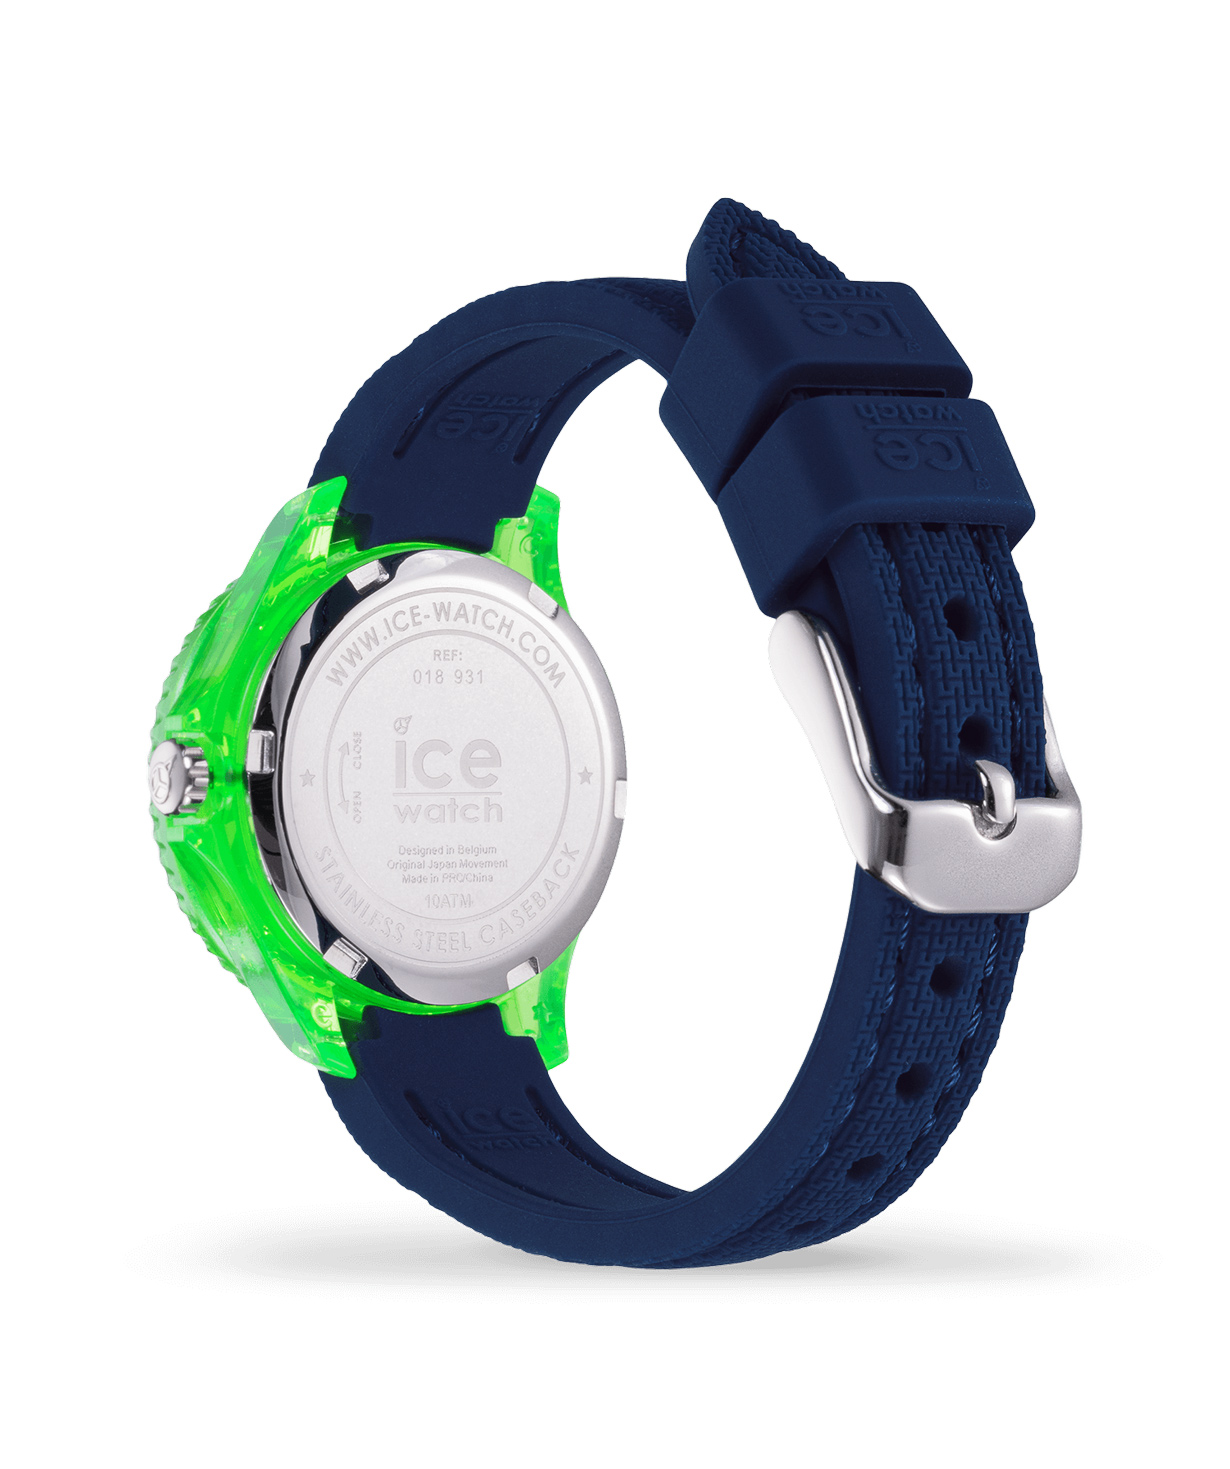 Ժամացույց «Ice-Watch» ICE cartoon - Dino